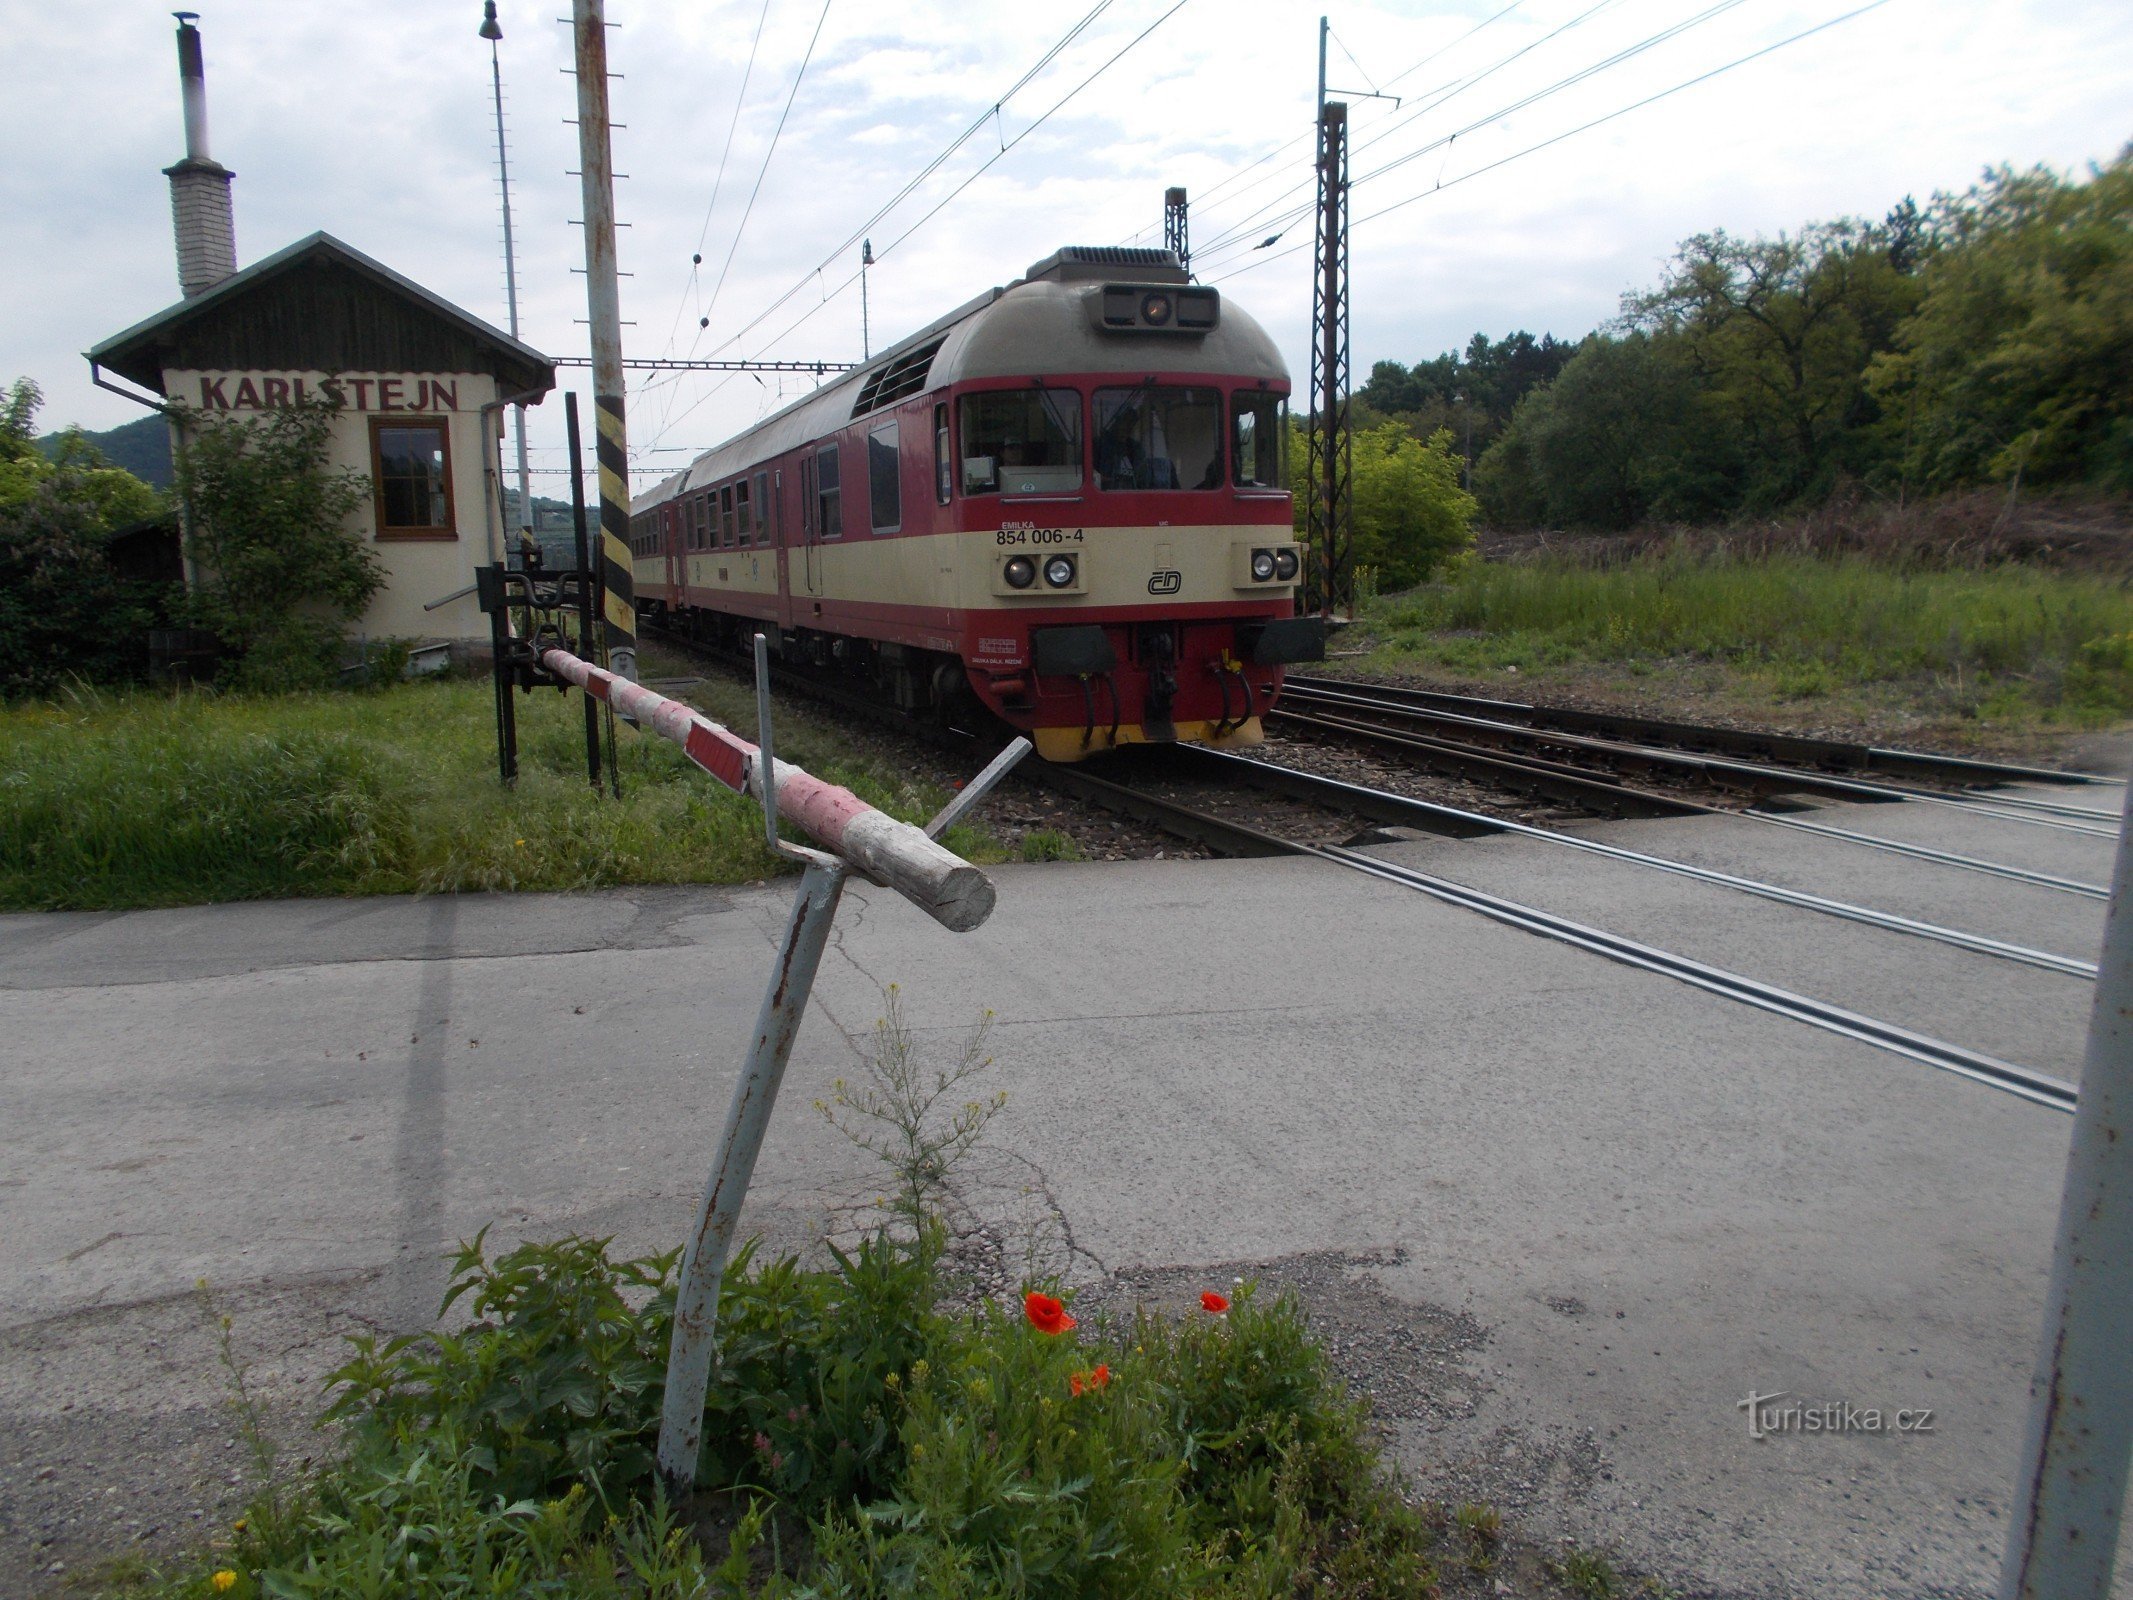 卡尔施泰因的机械屏障和前往贝龙的火车。